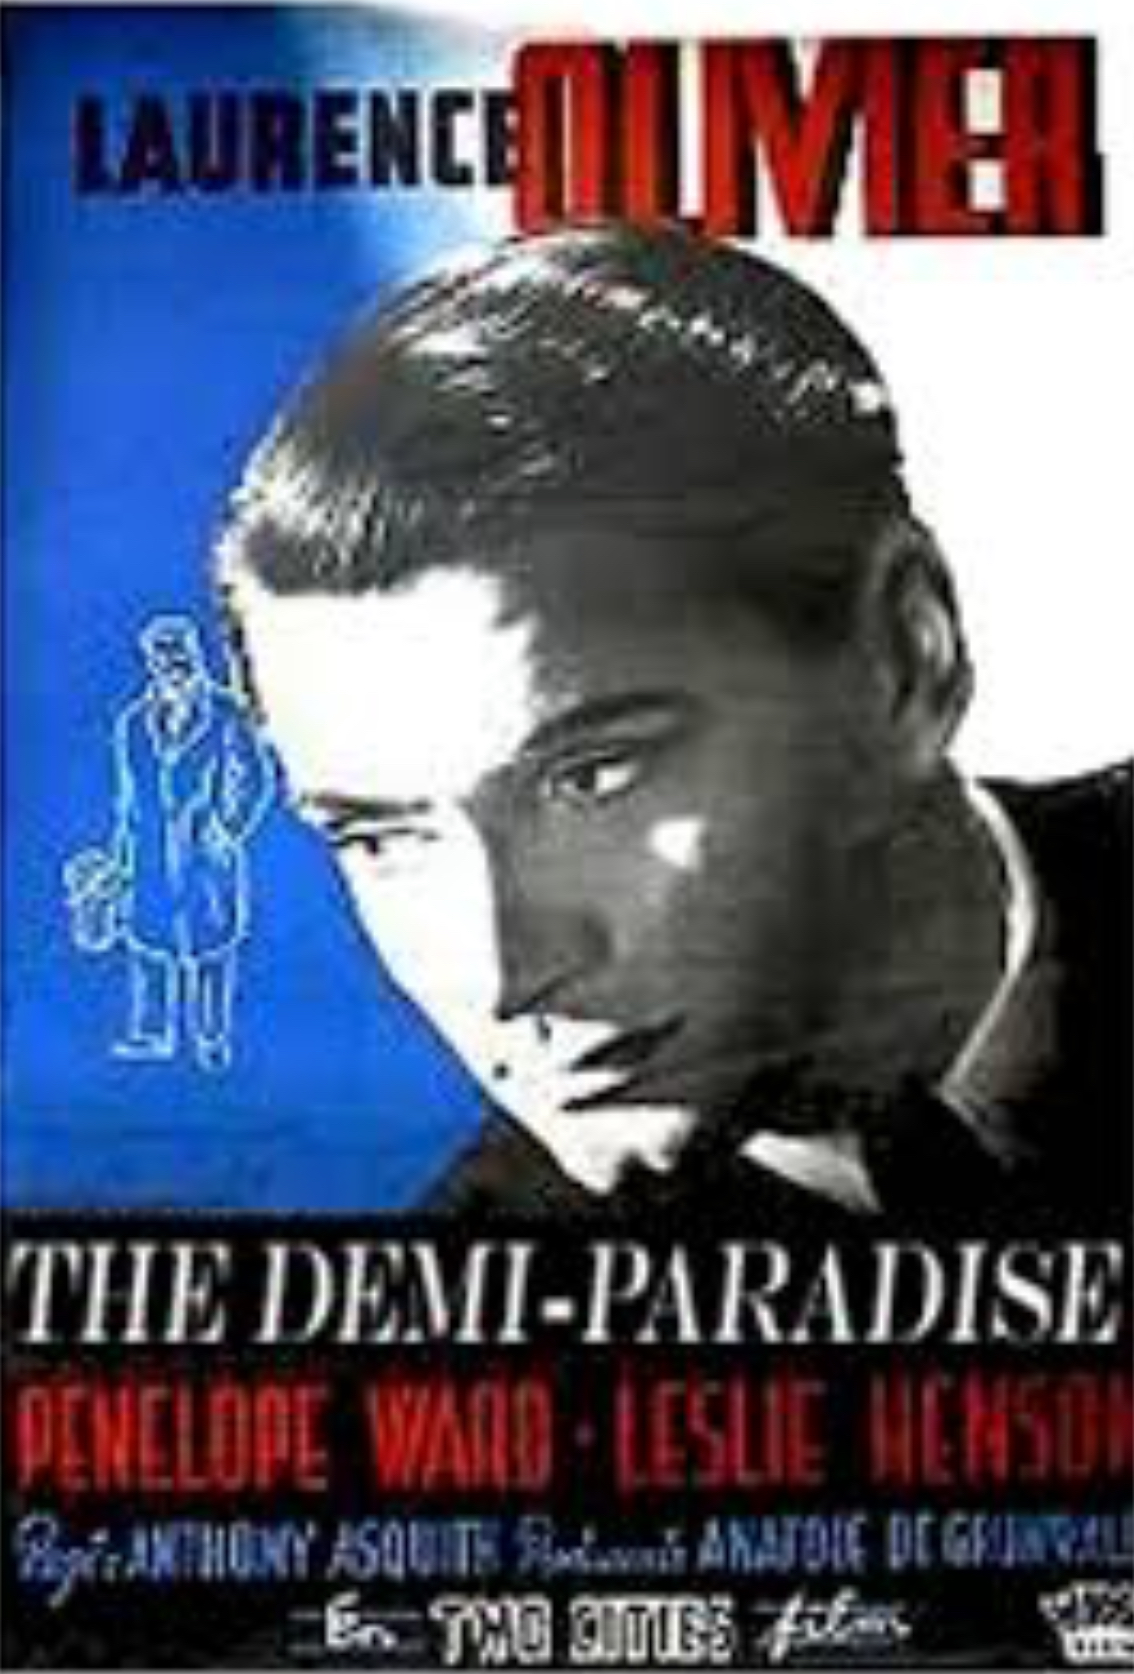 The Demi-Paradise